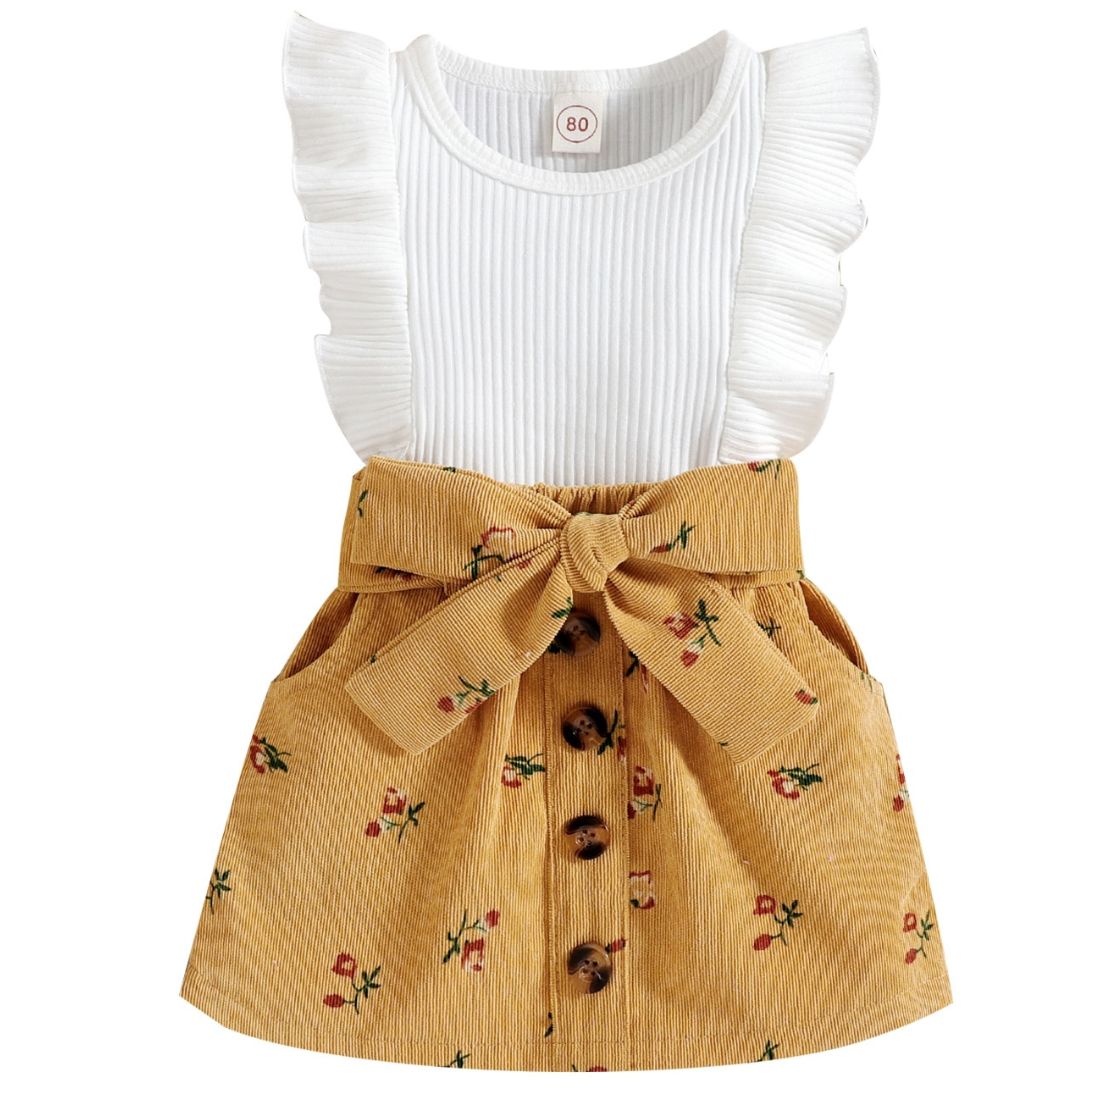 Ruffled Mustard Floral Skirt Toddler Clothing Set